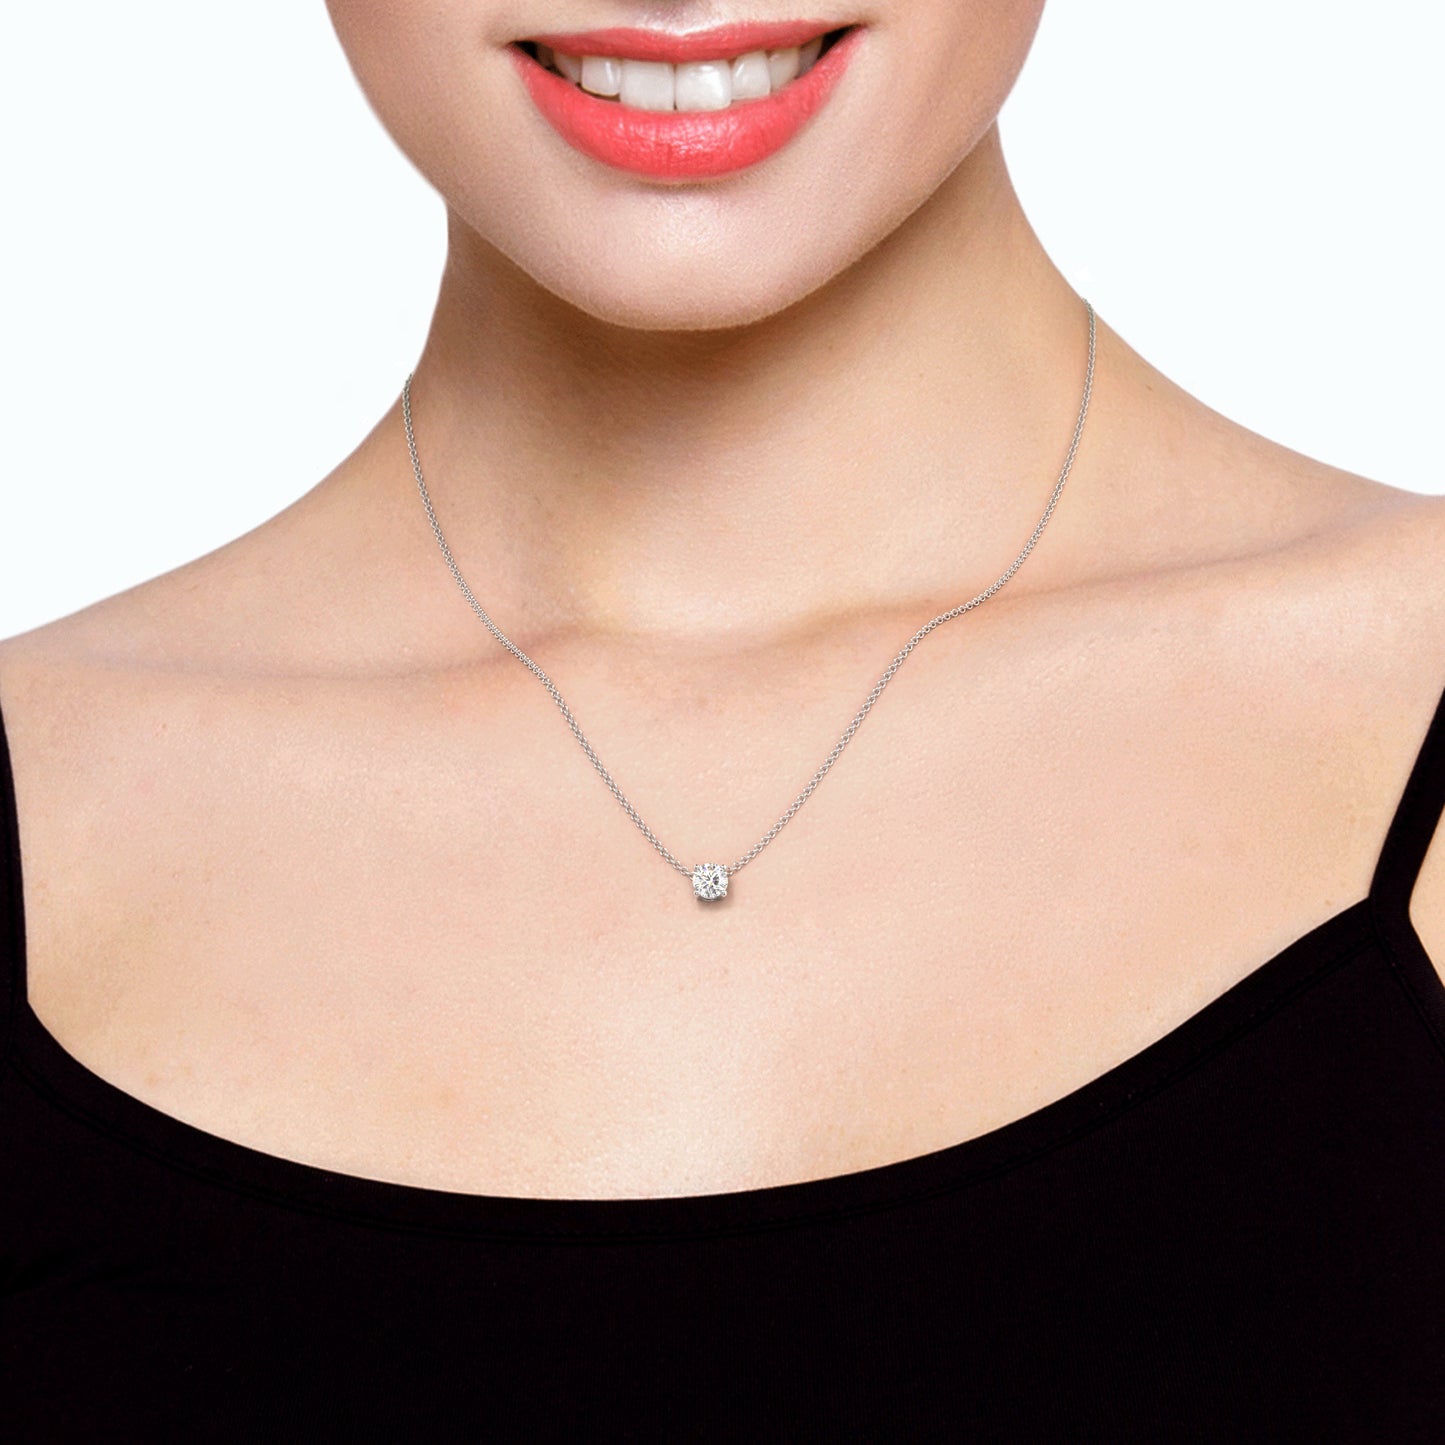 Sophia Solitaire Necklace Round Brilliant Cut Diamond 1.0 carat 